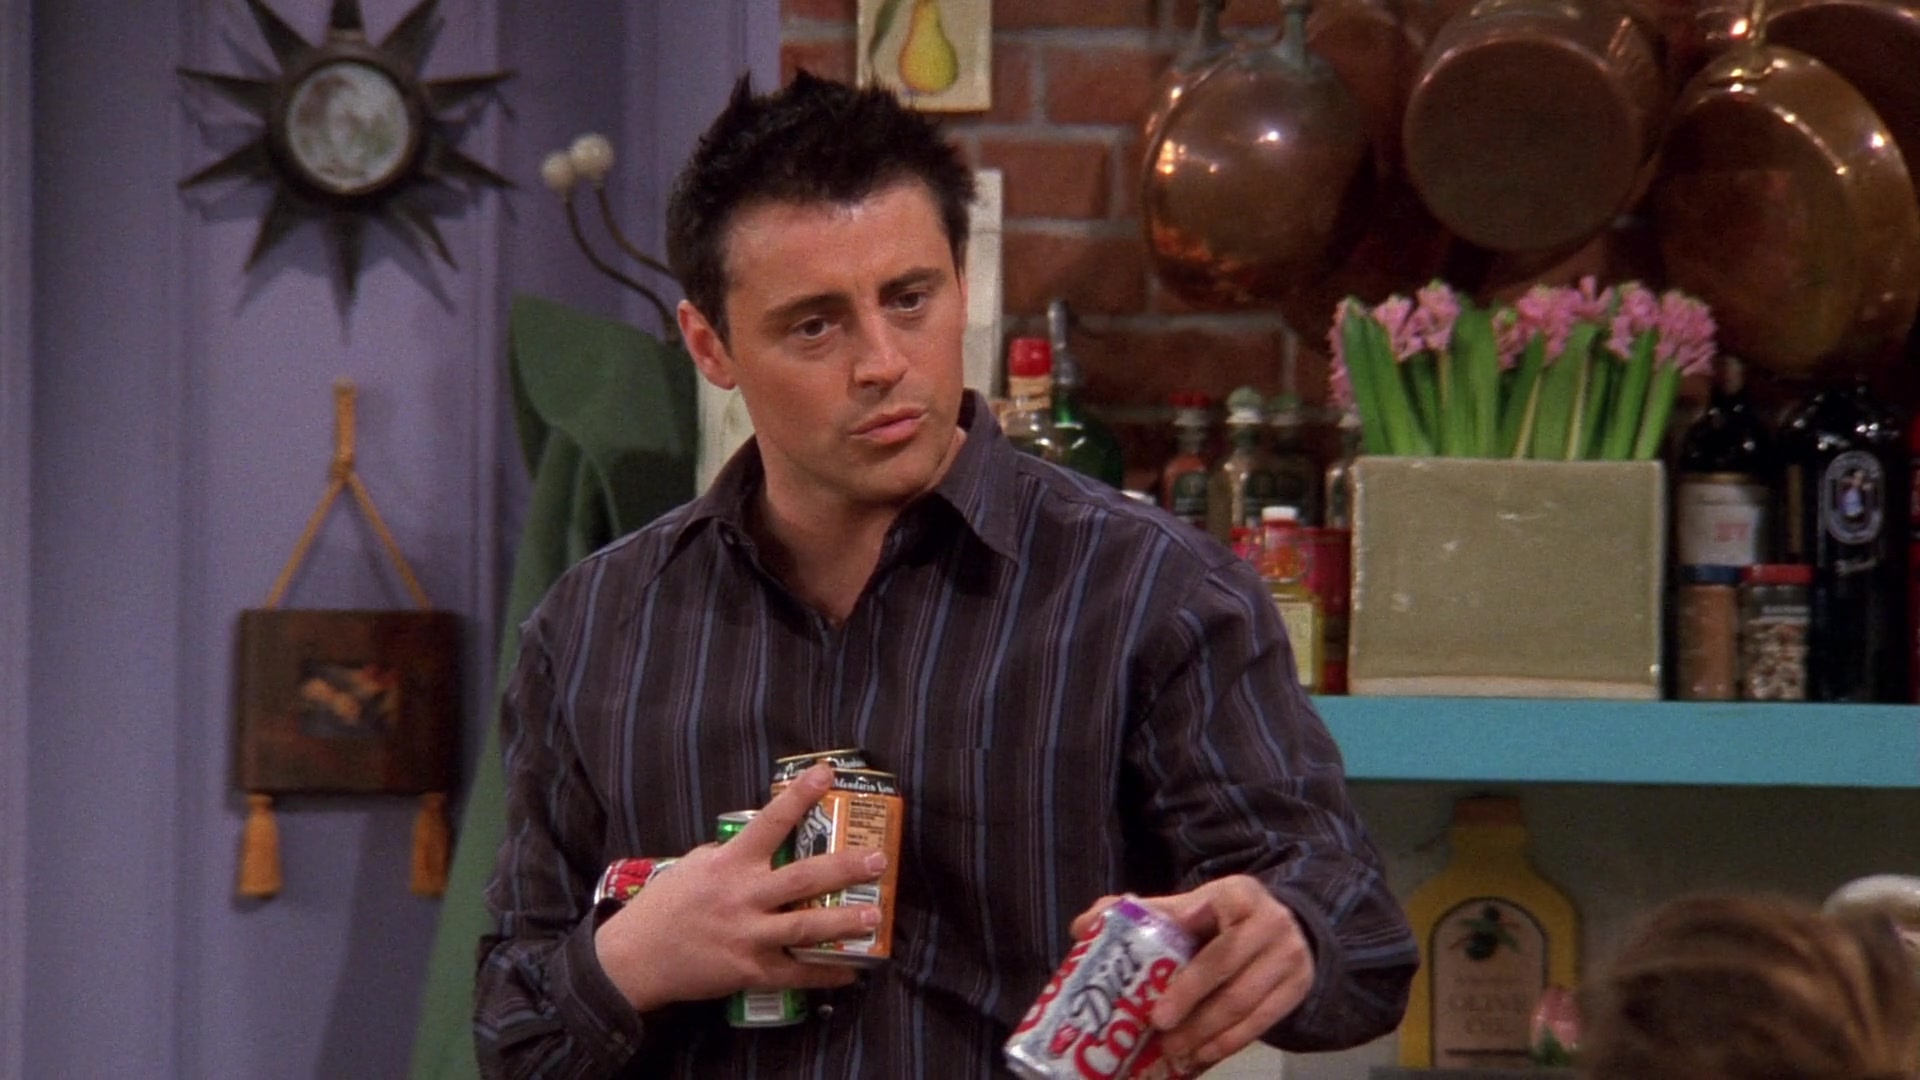 Diet Coke Held by Matt LeBlanc (Joey Tribbiani) in Friends Season 9 Episode...